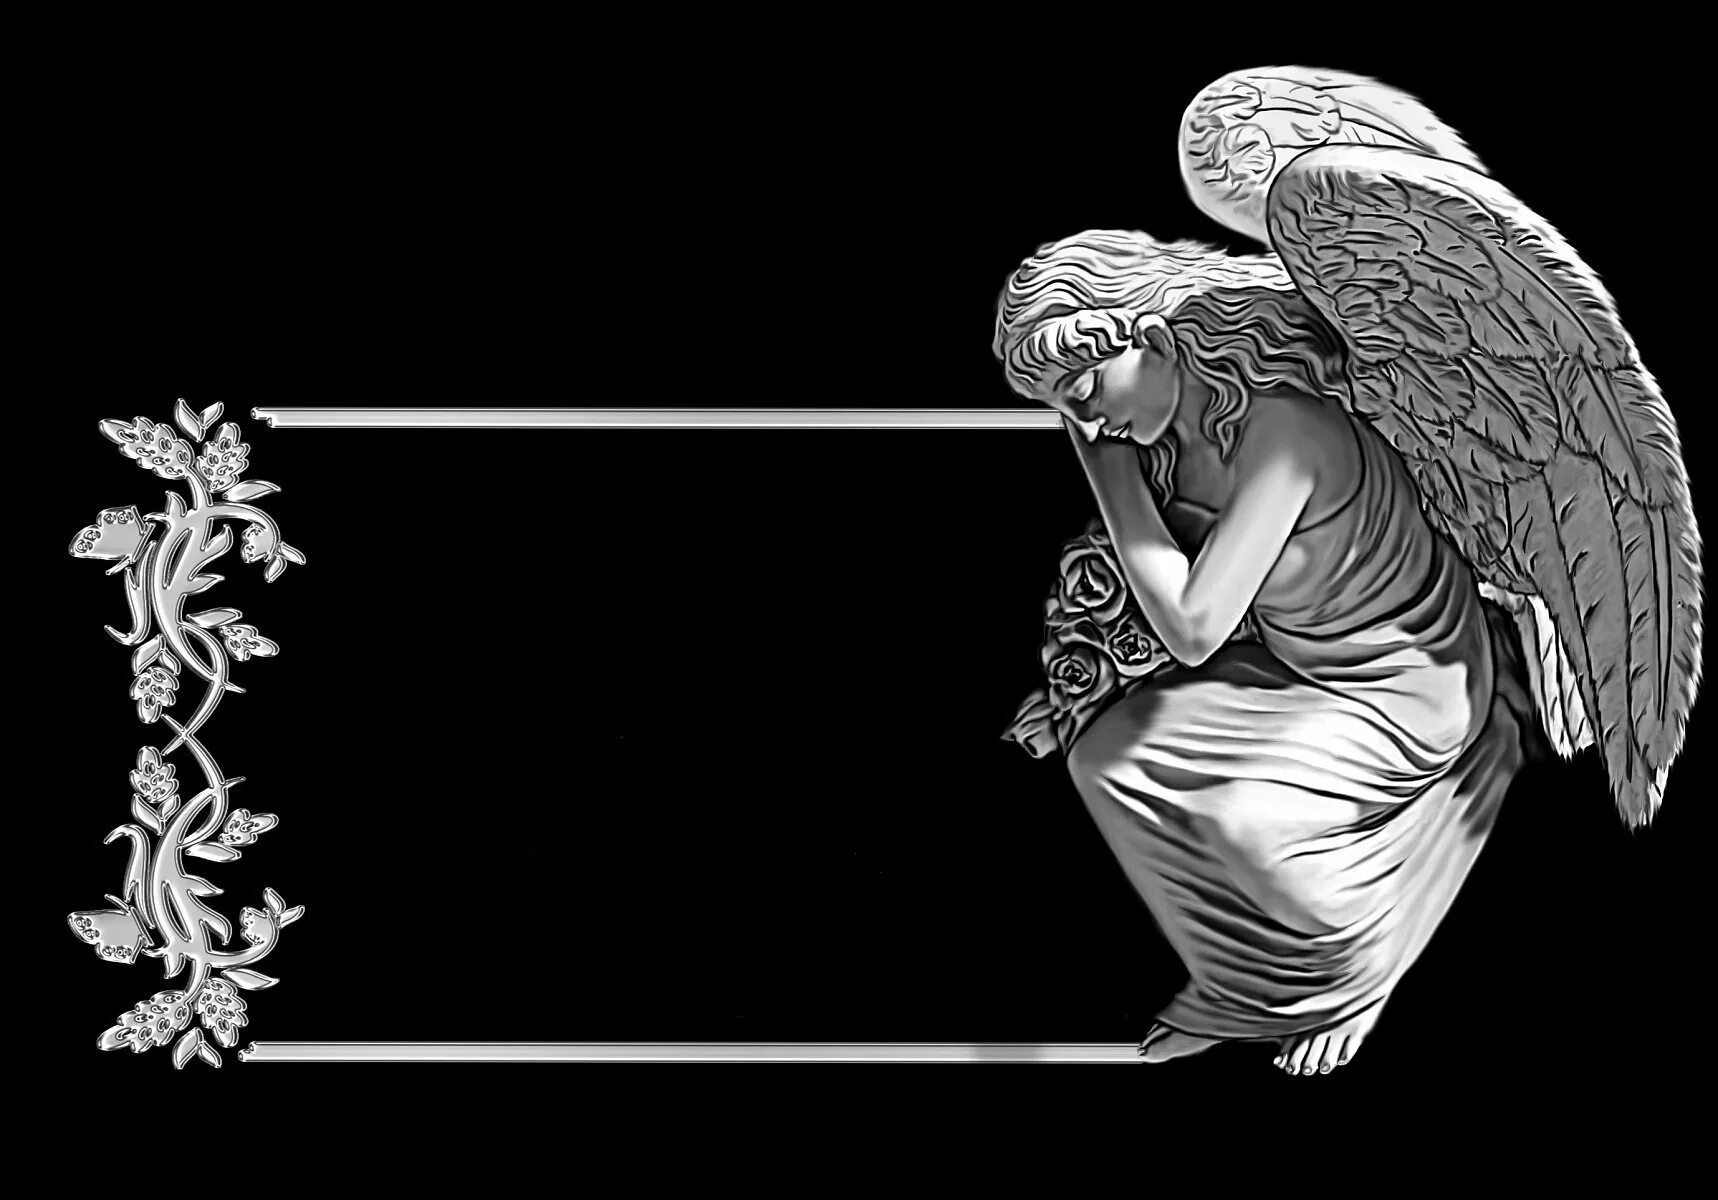 Ангел похороните. Ангел для гравировки на памятниках. Изображения ангелов на памятниках. Скорбящий ангел на памятник гравировка. Скорбящий ангел гравировка.